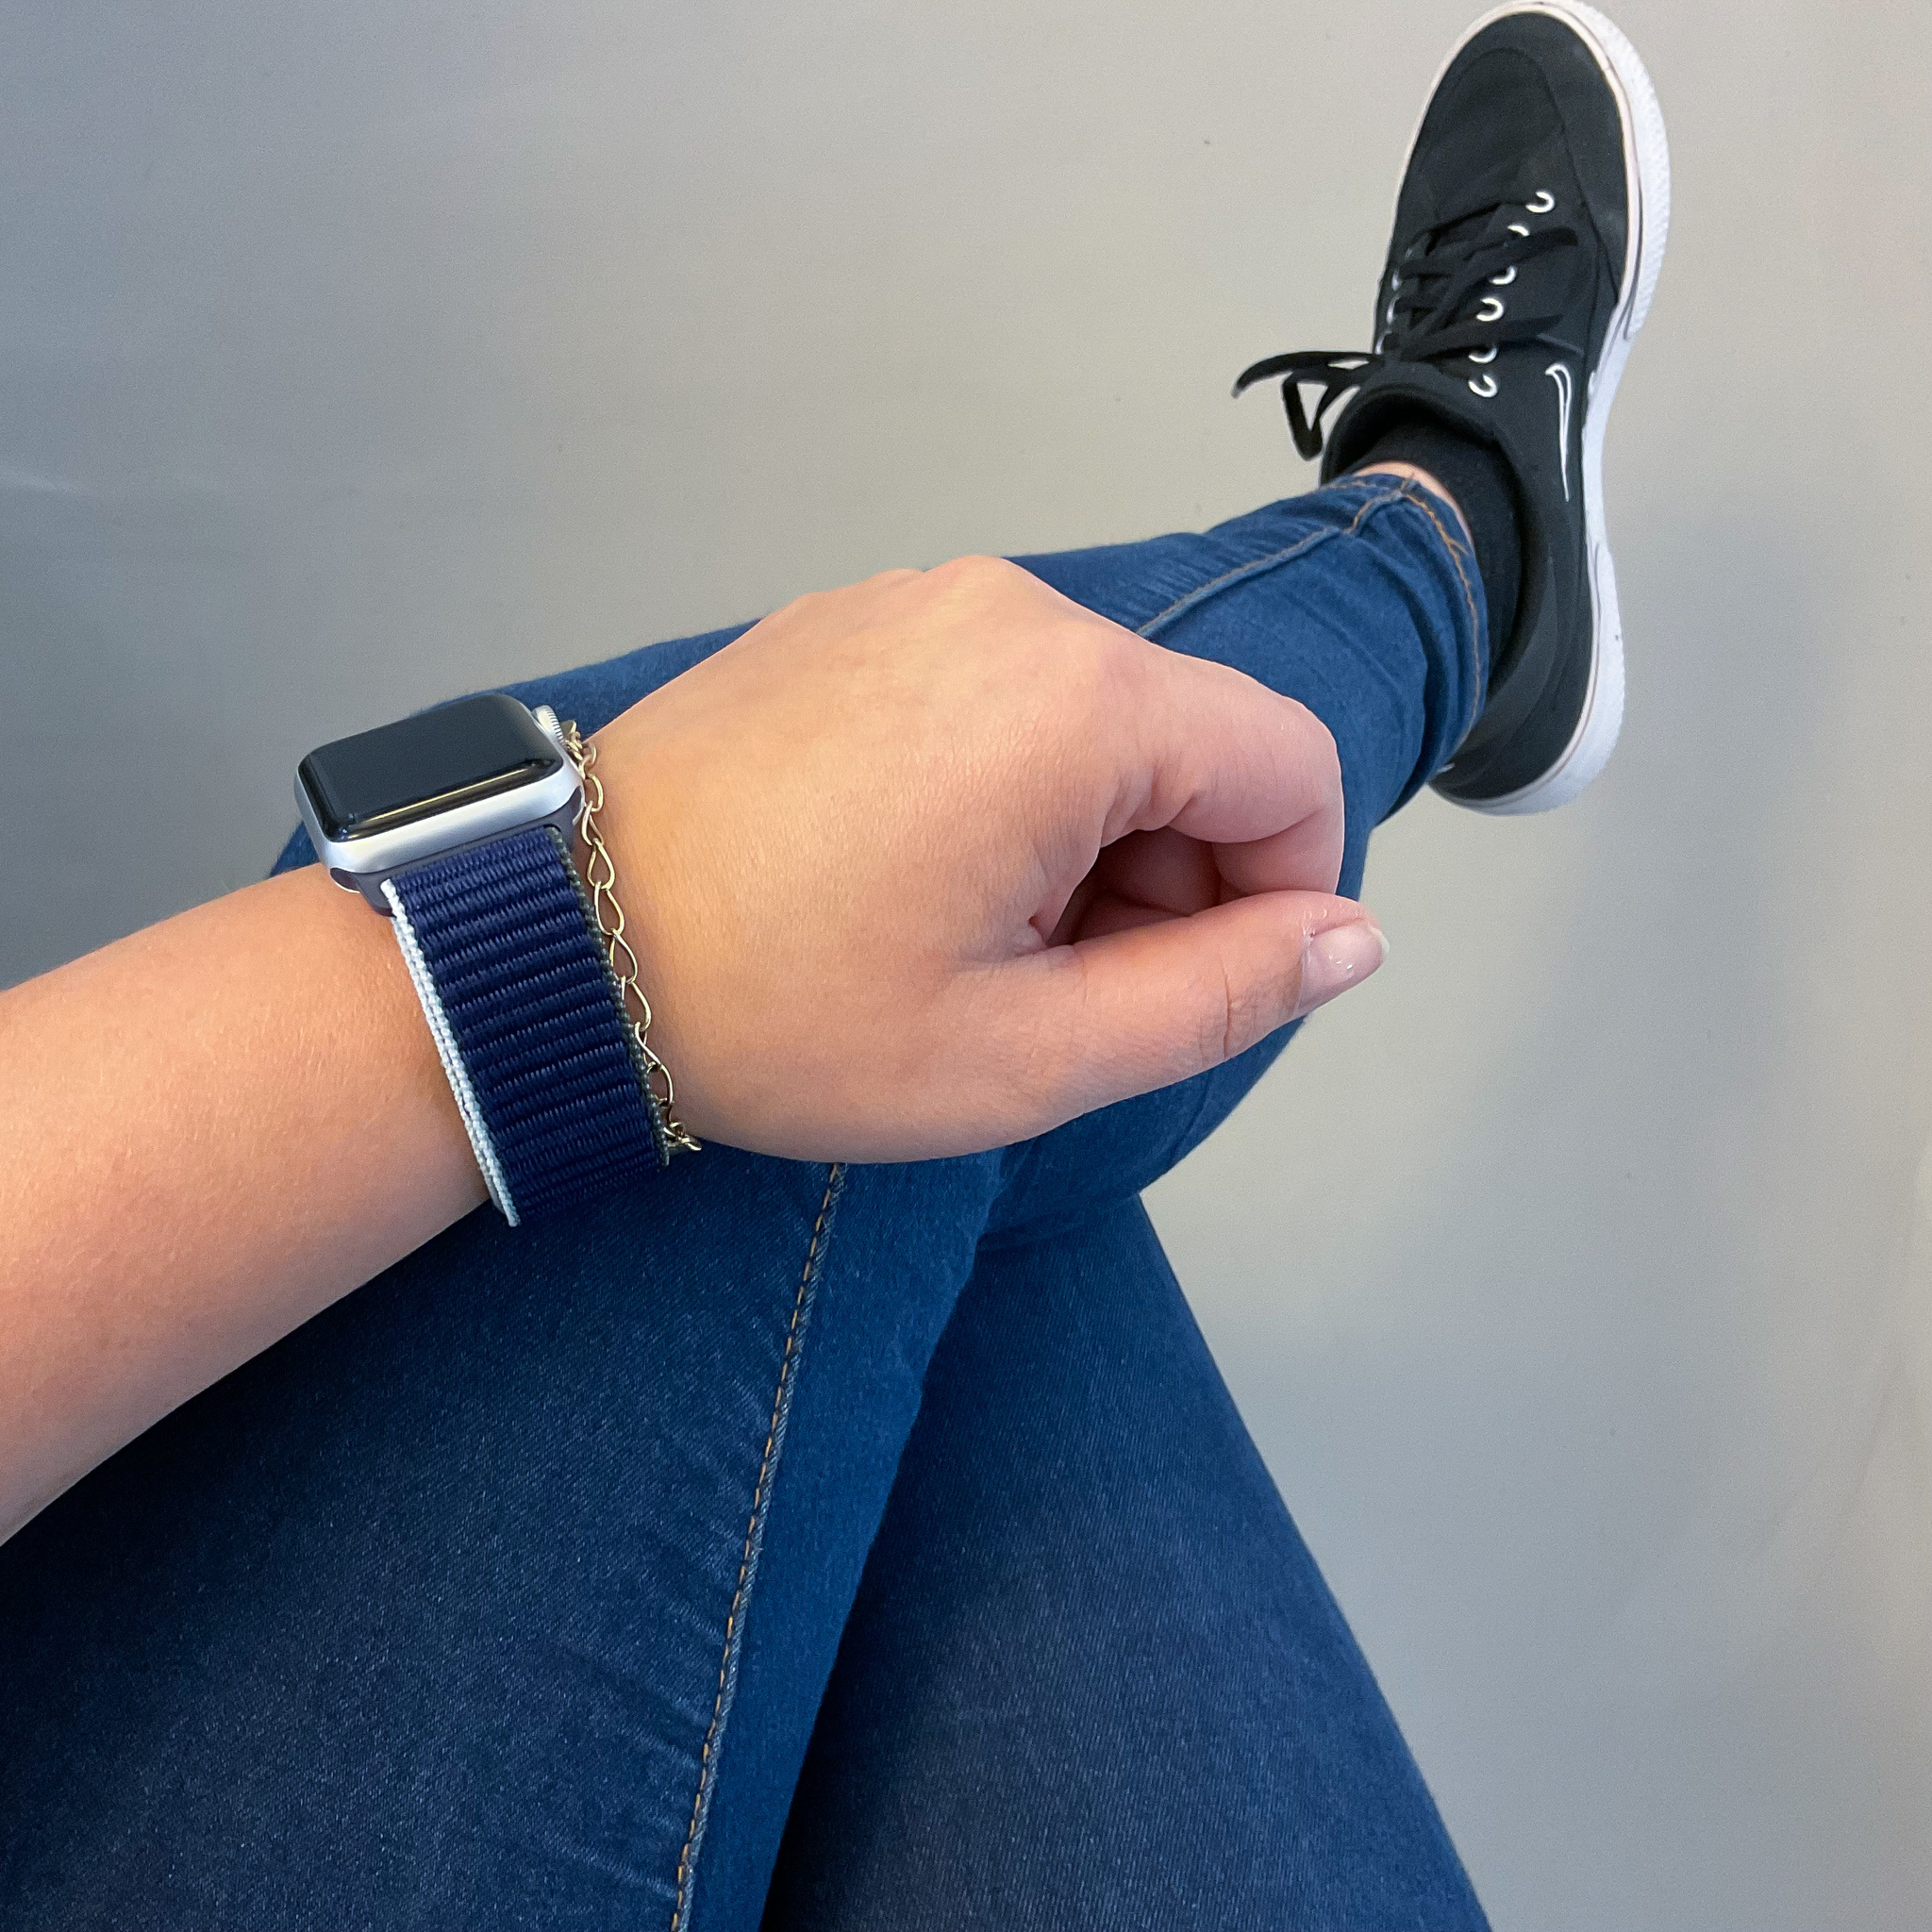 Apple Watch Nylon Sport Loop - dunkles Meeresblau